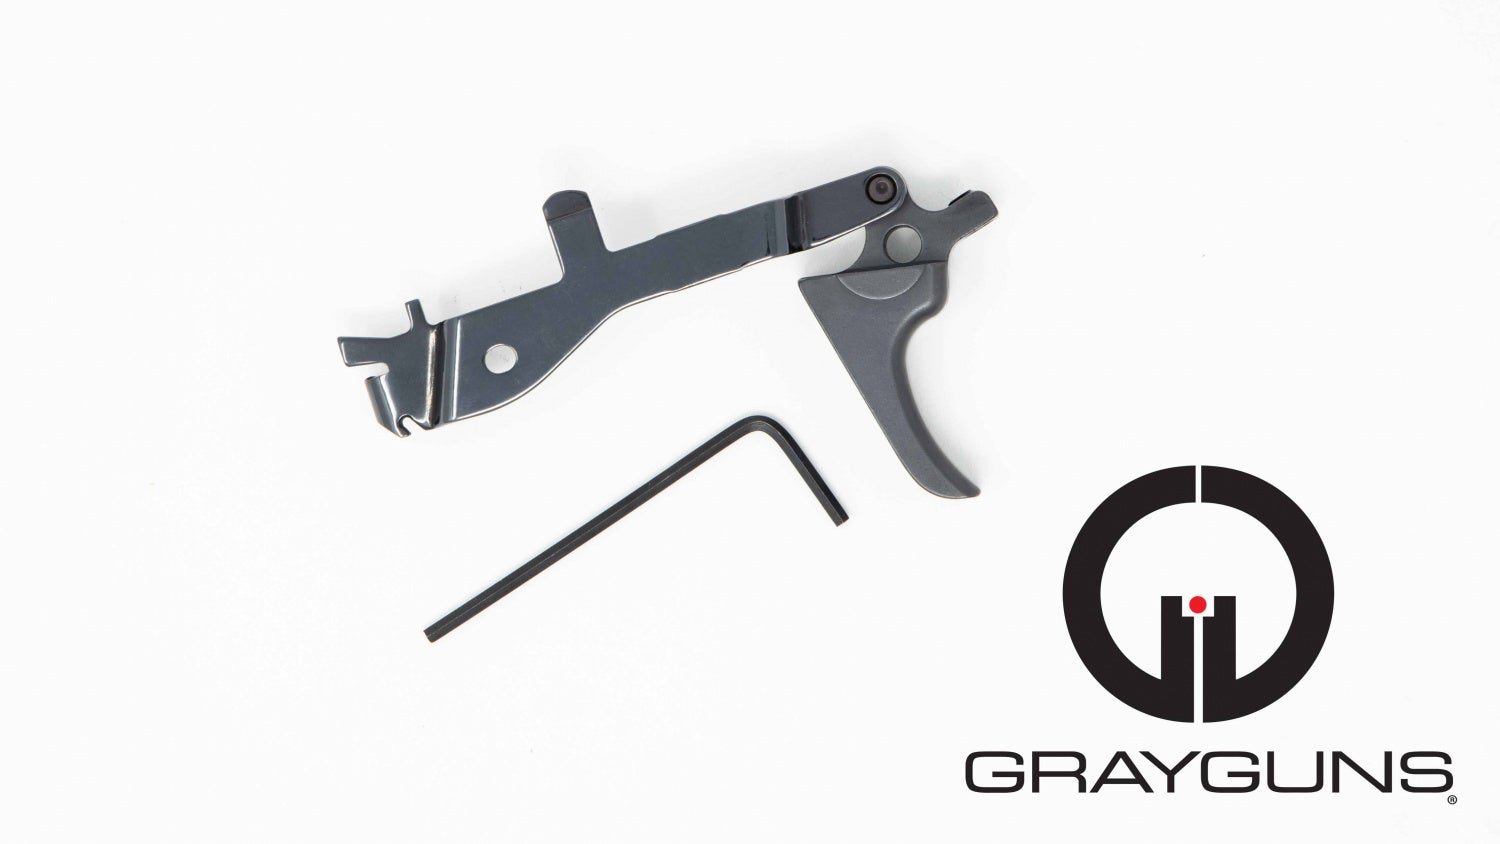 Grayguns Hybrid Trigger kit.